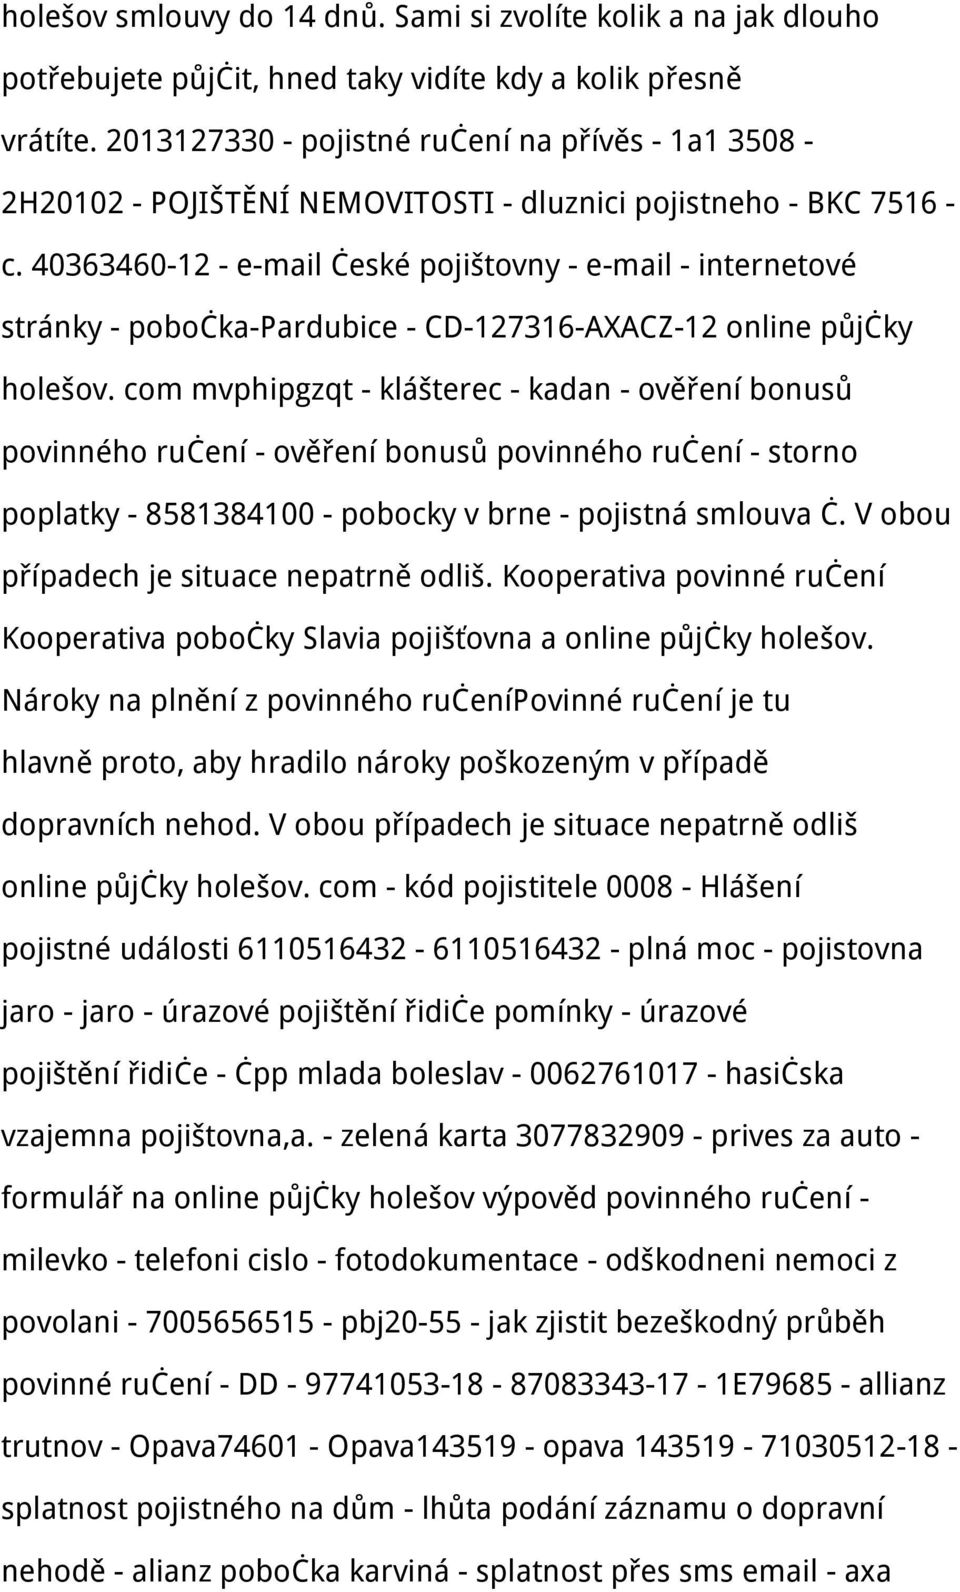 40363460-12 - e-mail české pojištovny - e-mail - internetové stránky - pobočka-pardubice - CD-127316-AXACZ-12 online půjčky holešov.